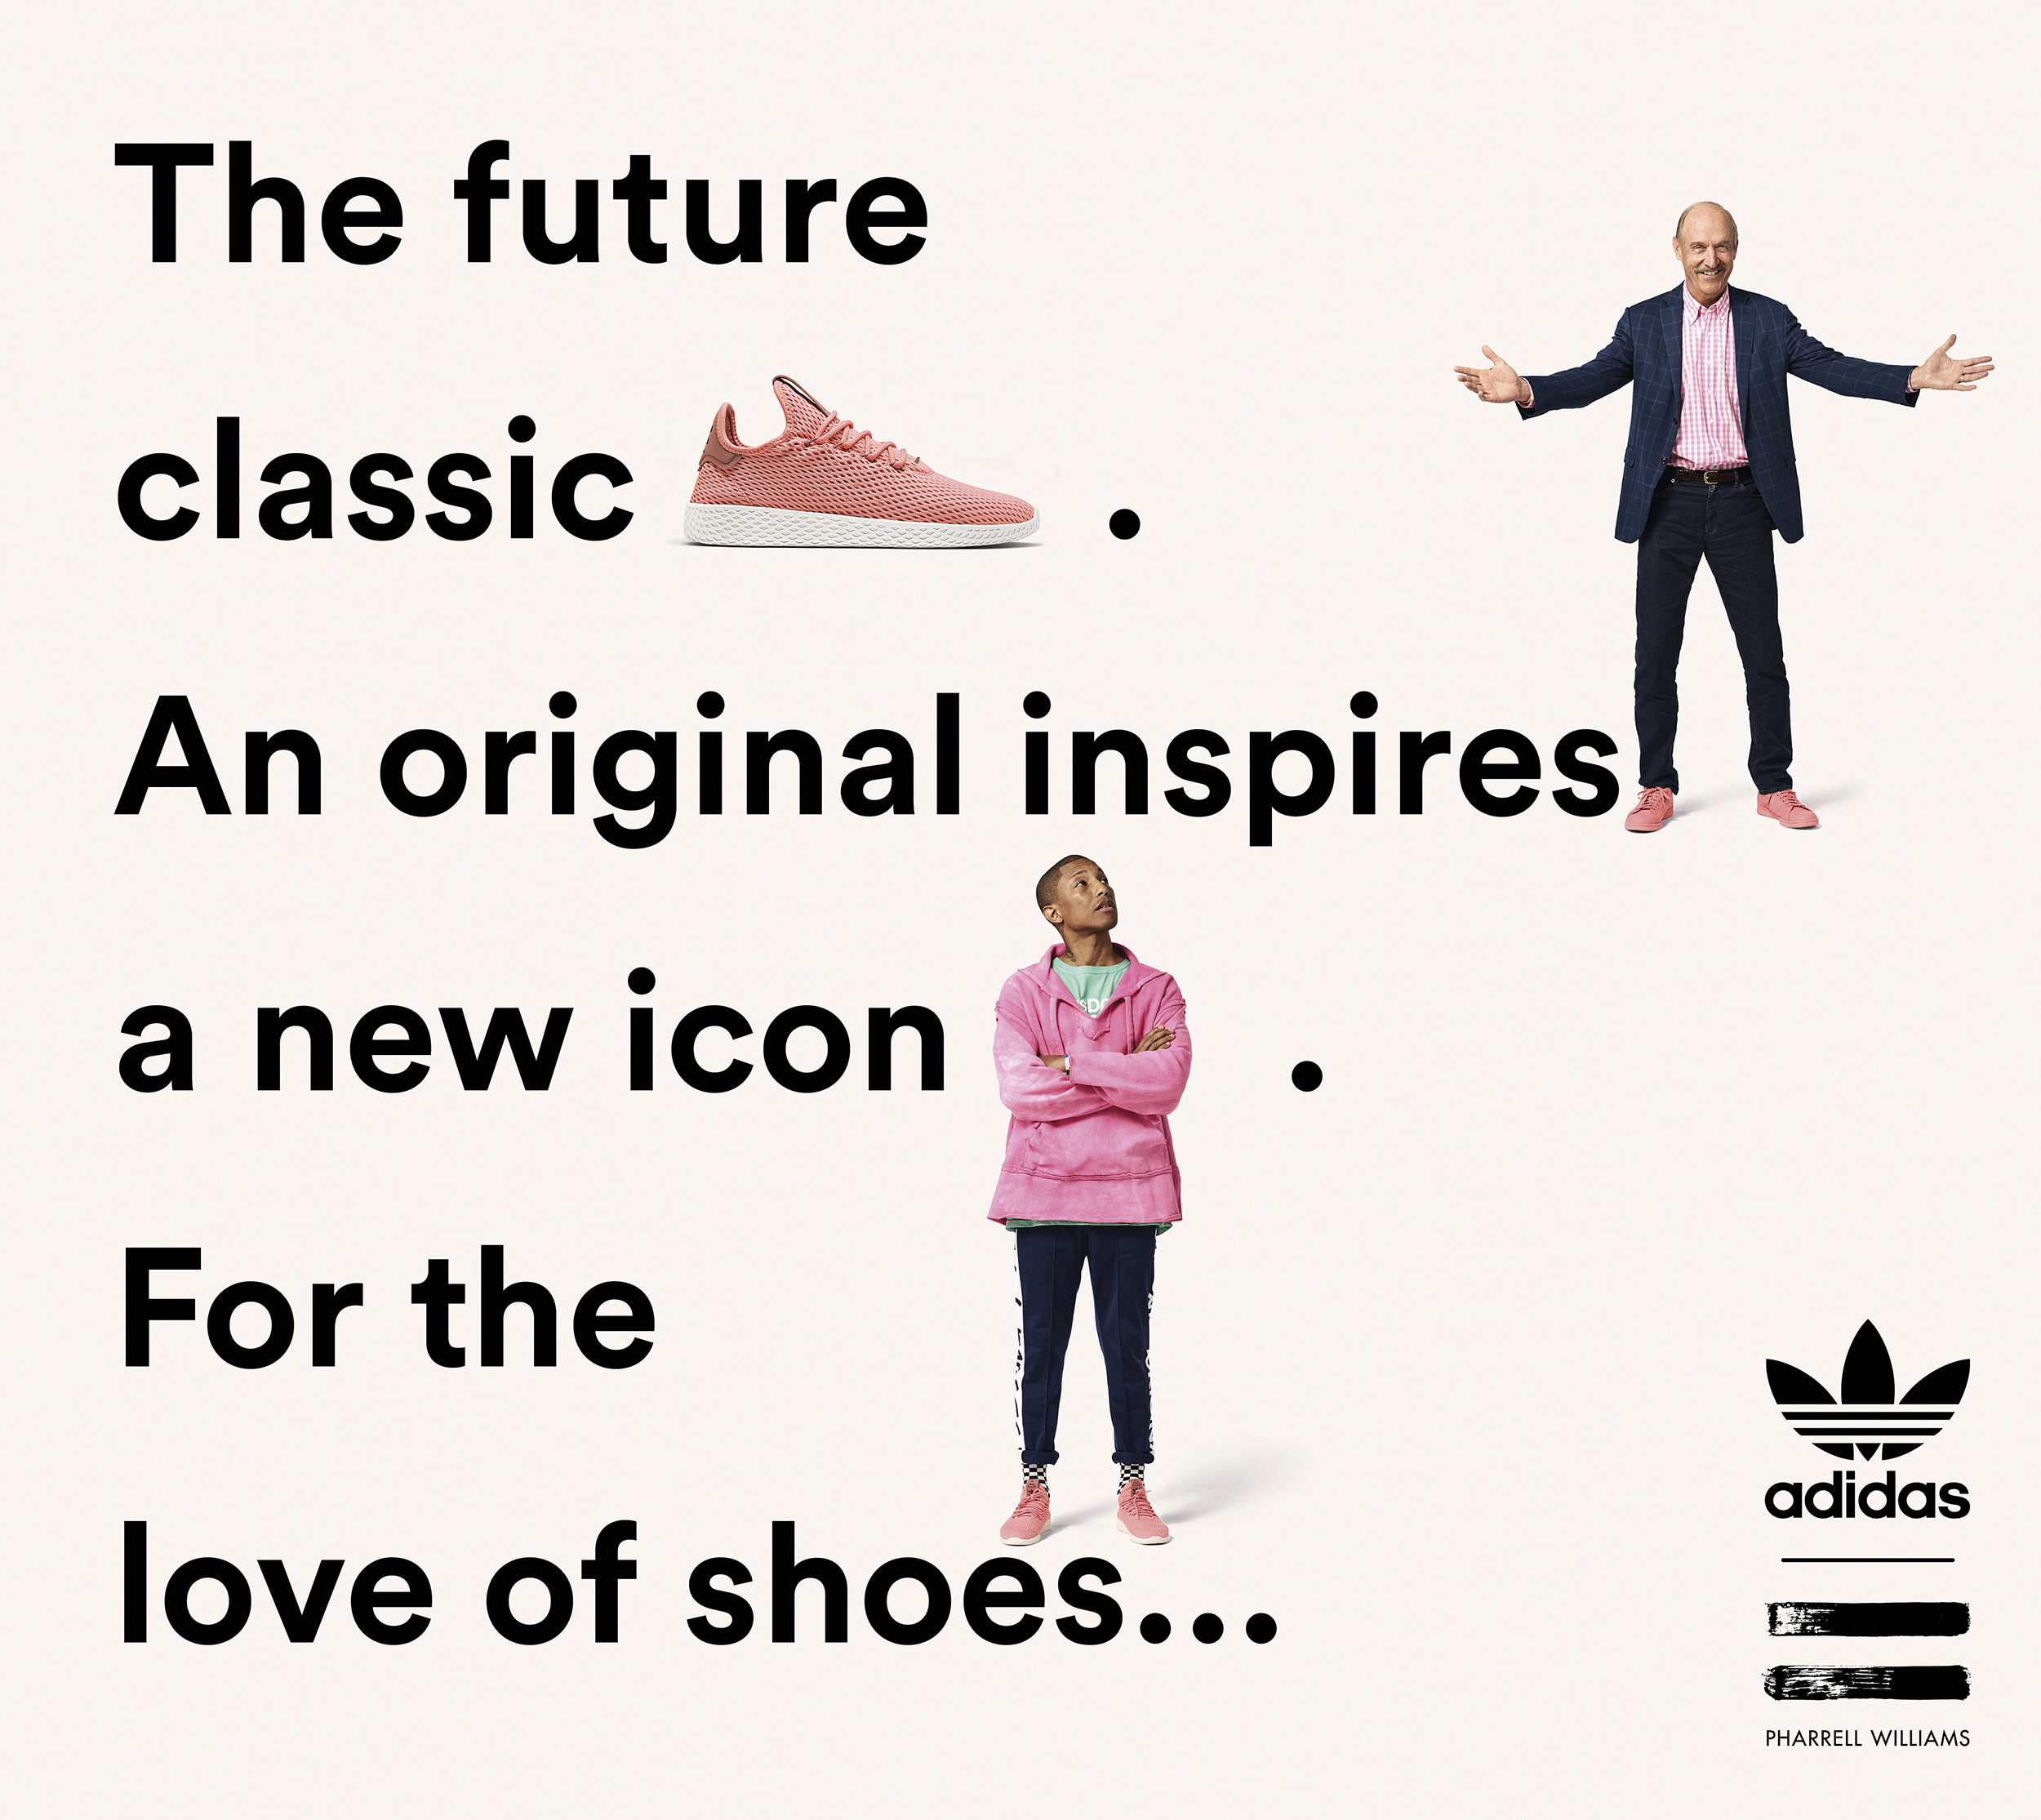 adidas Originals = PHARRELL WILLIAMS